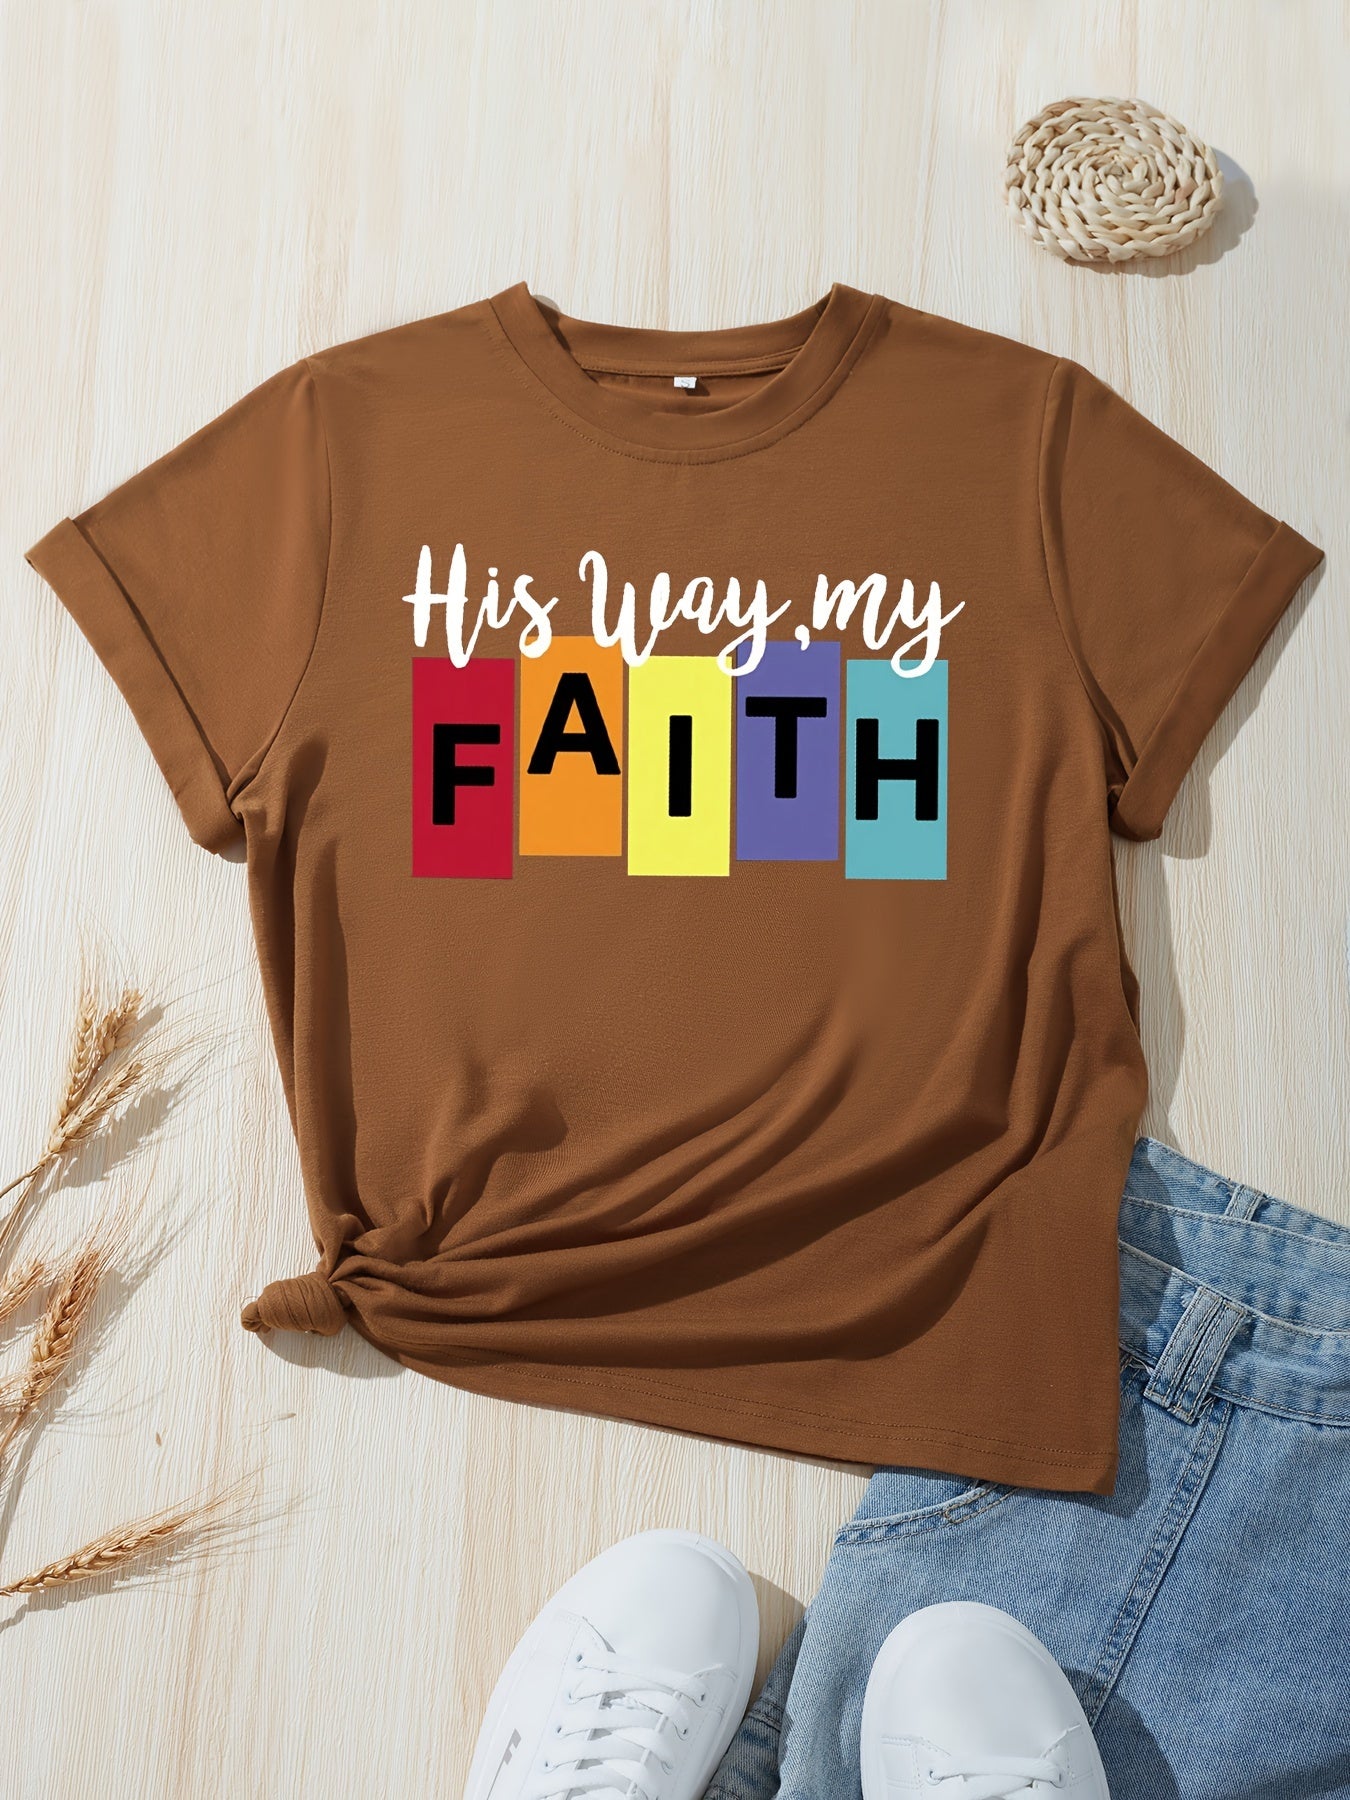 His Way My Faith Women's Christian T-shirt claimedbygoddesigns